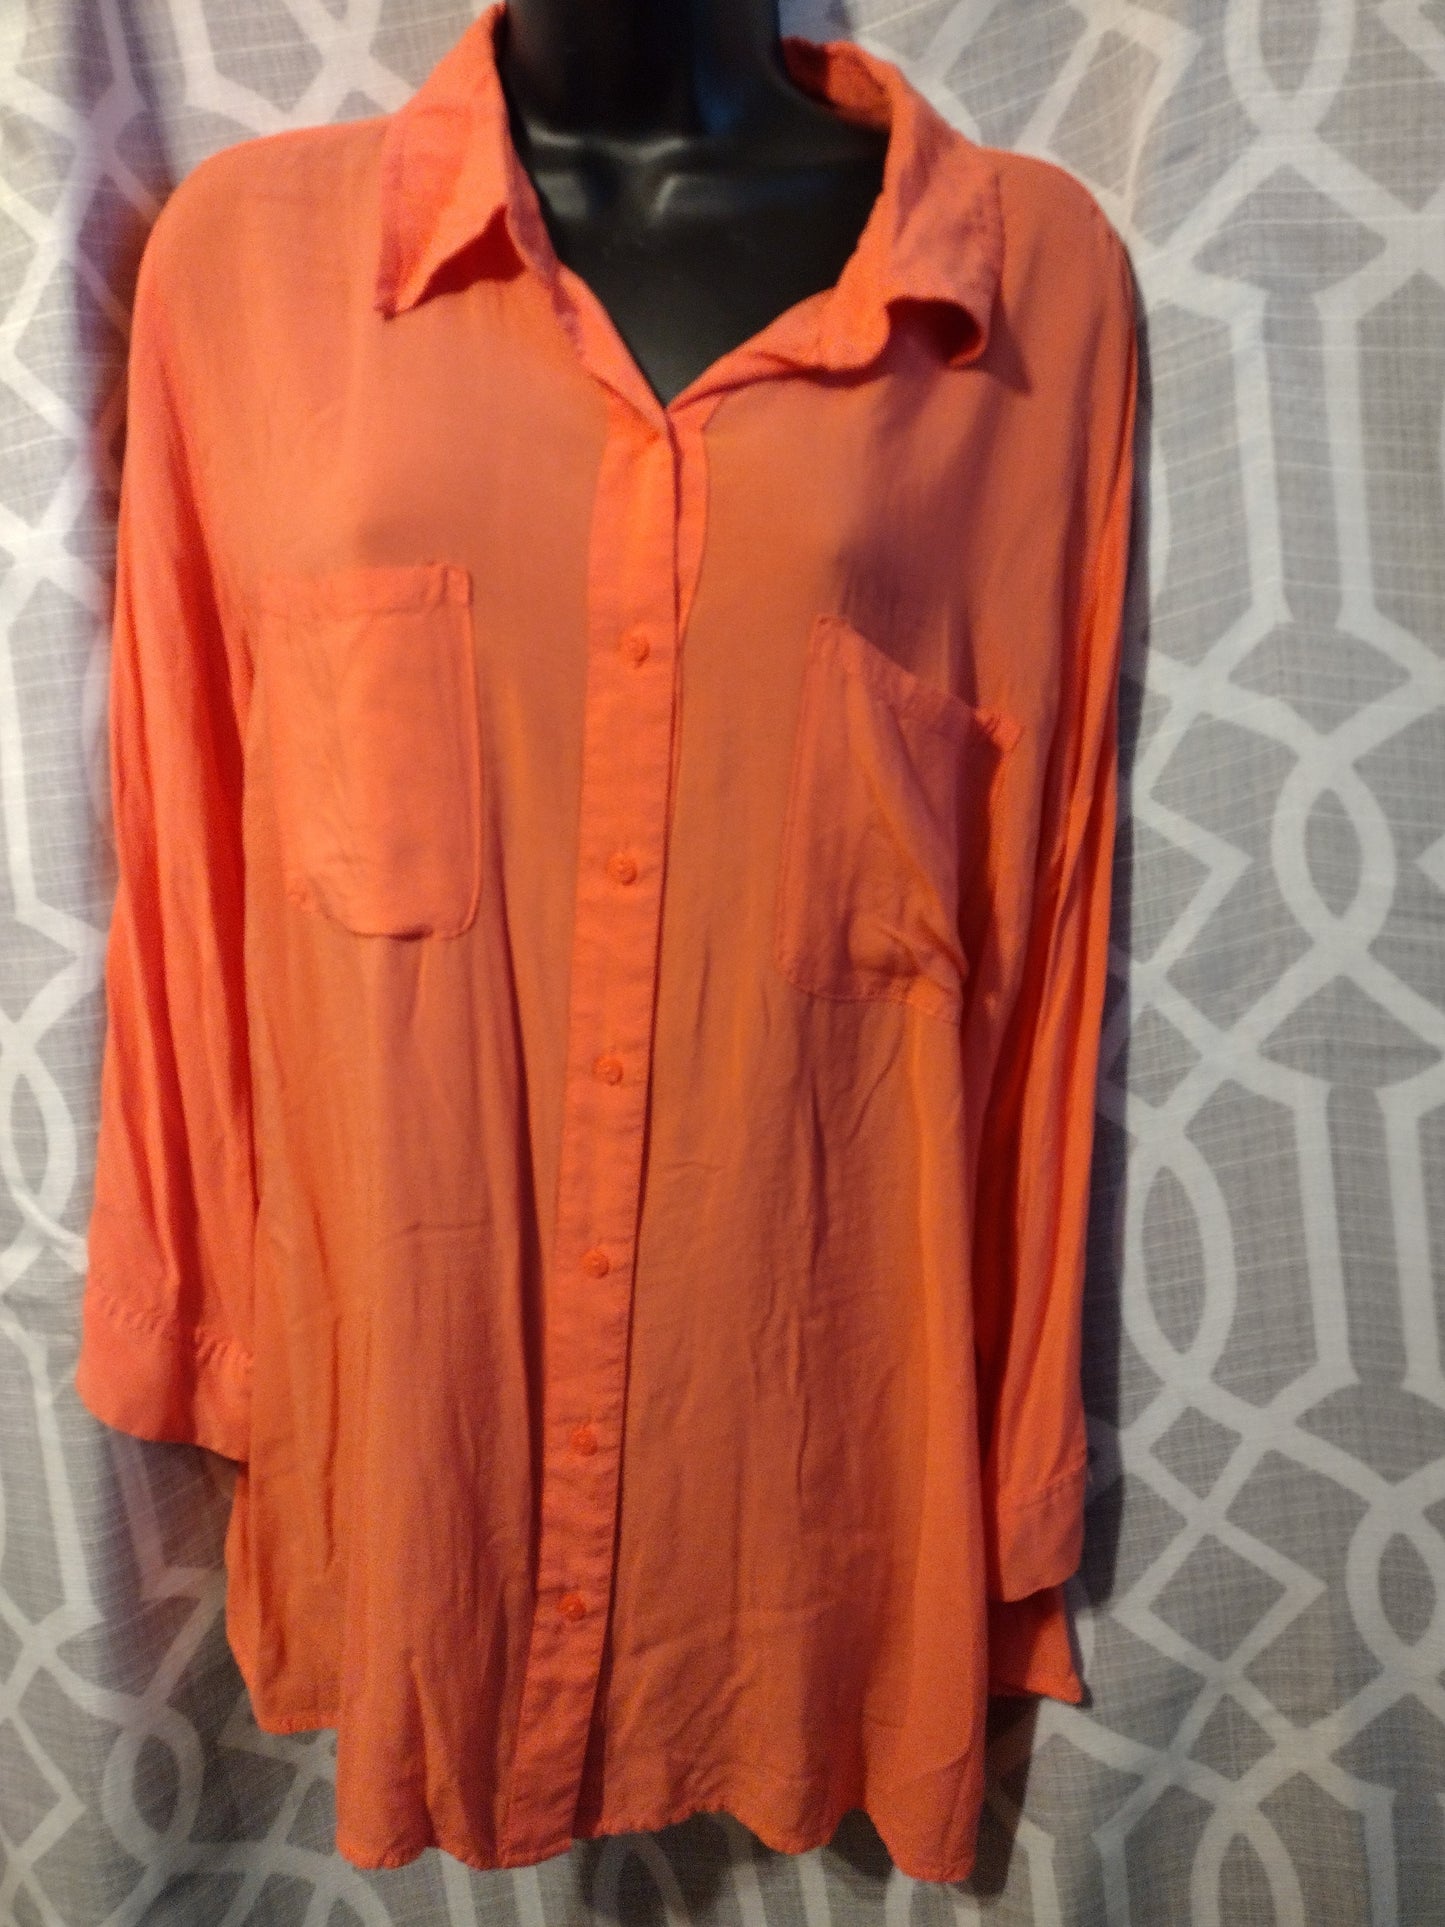 Women's orange shirt size large